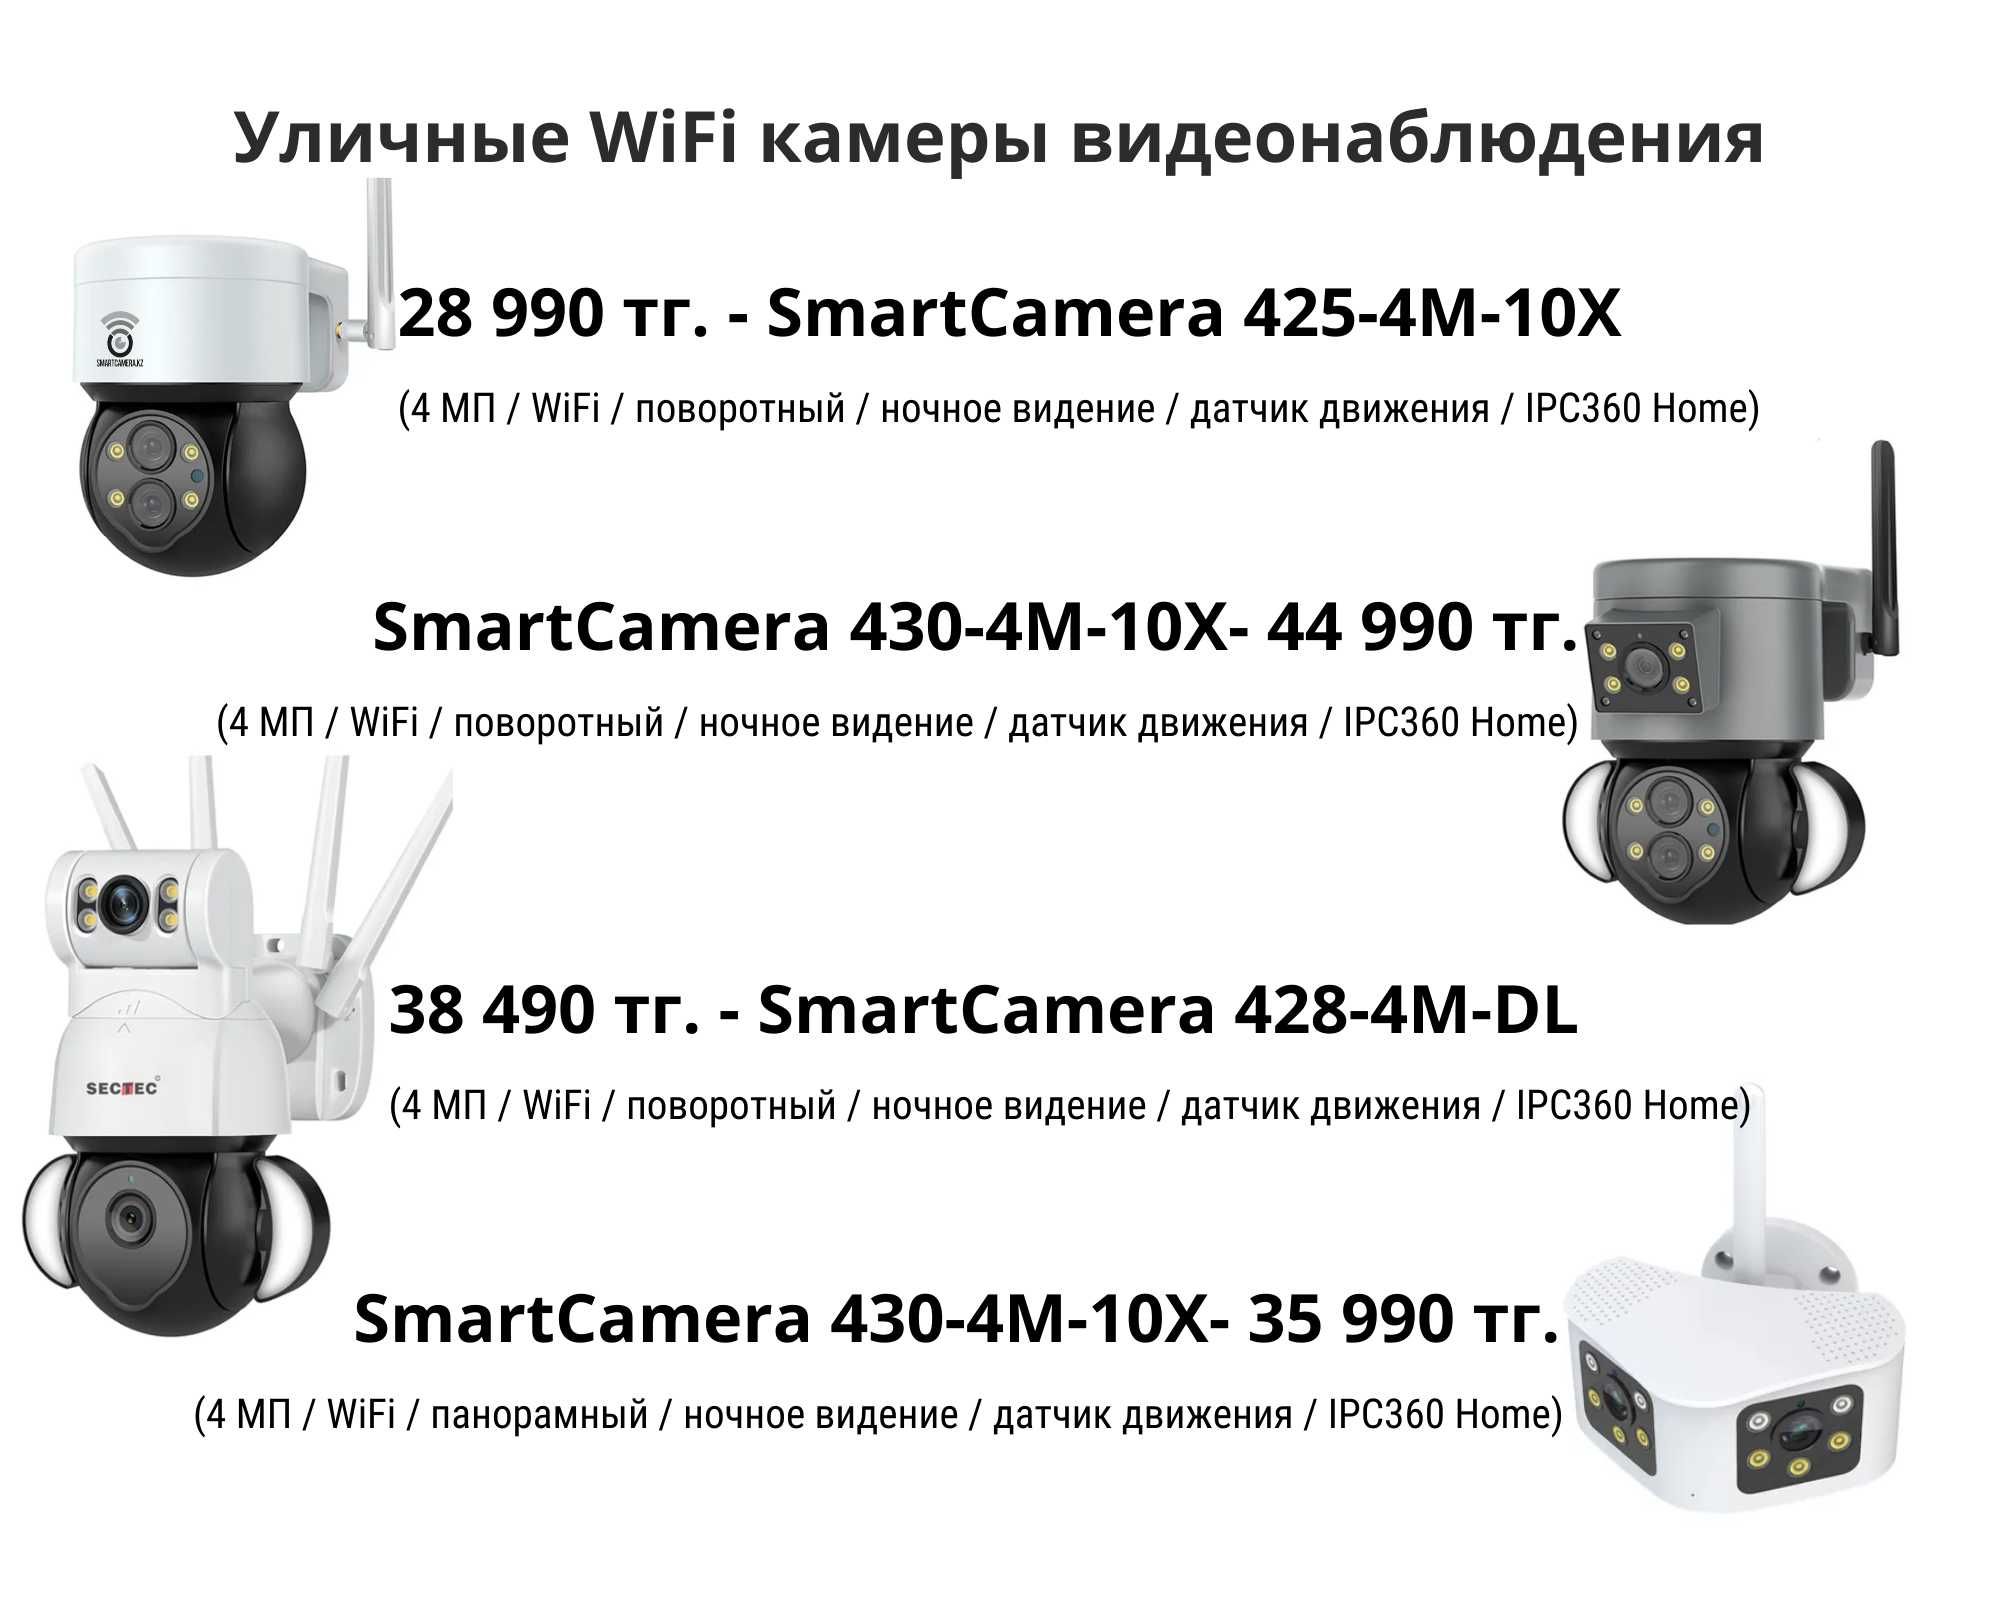 4G и WiFi камеры видеонаблюдения с доставкой